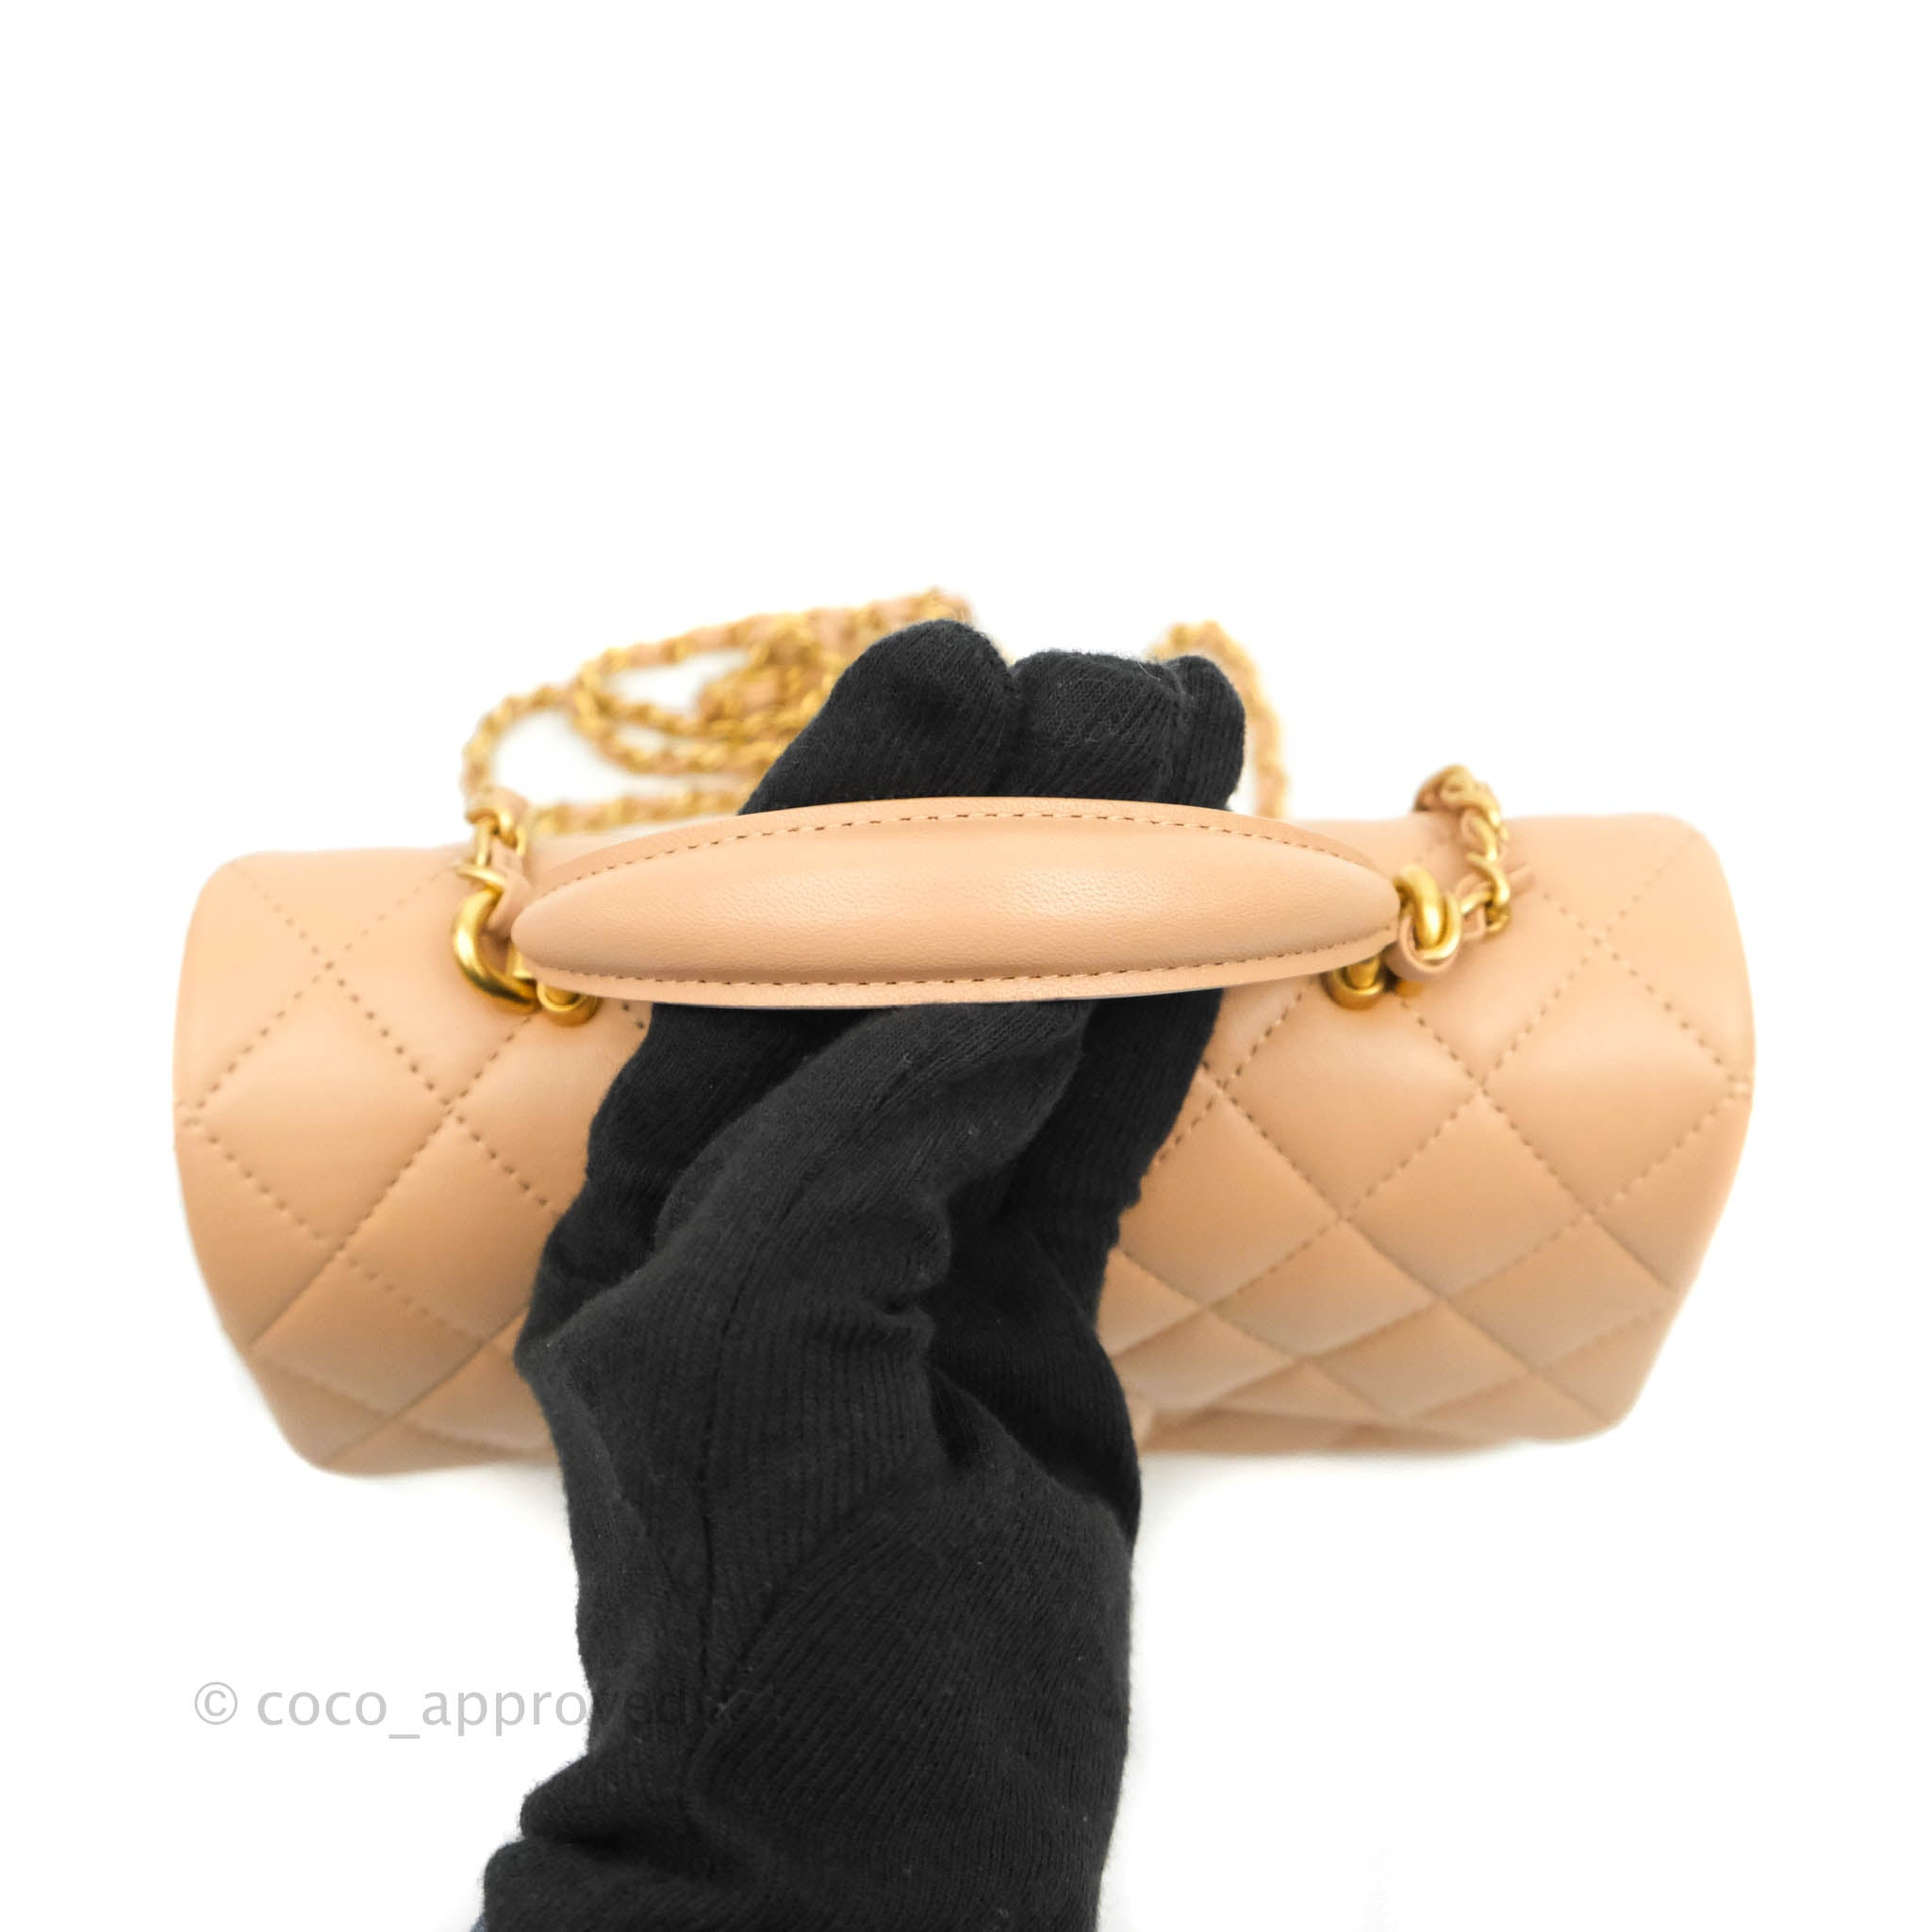 CHANEL, Bags, Chanel Classic Mini Rectangle Flap Matelasse Bag Beige